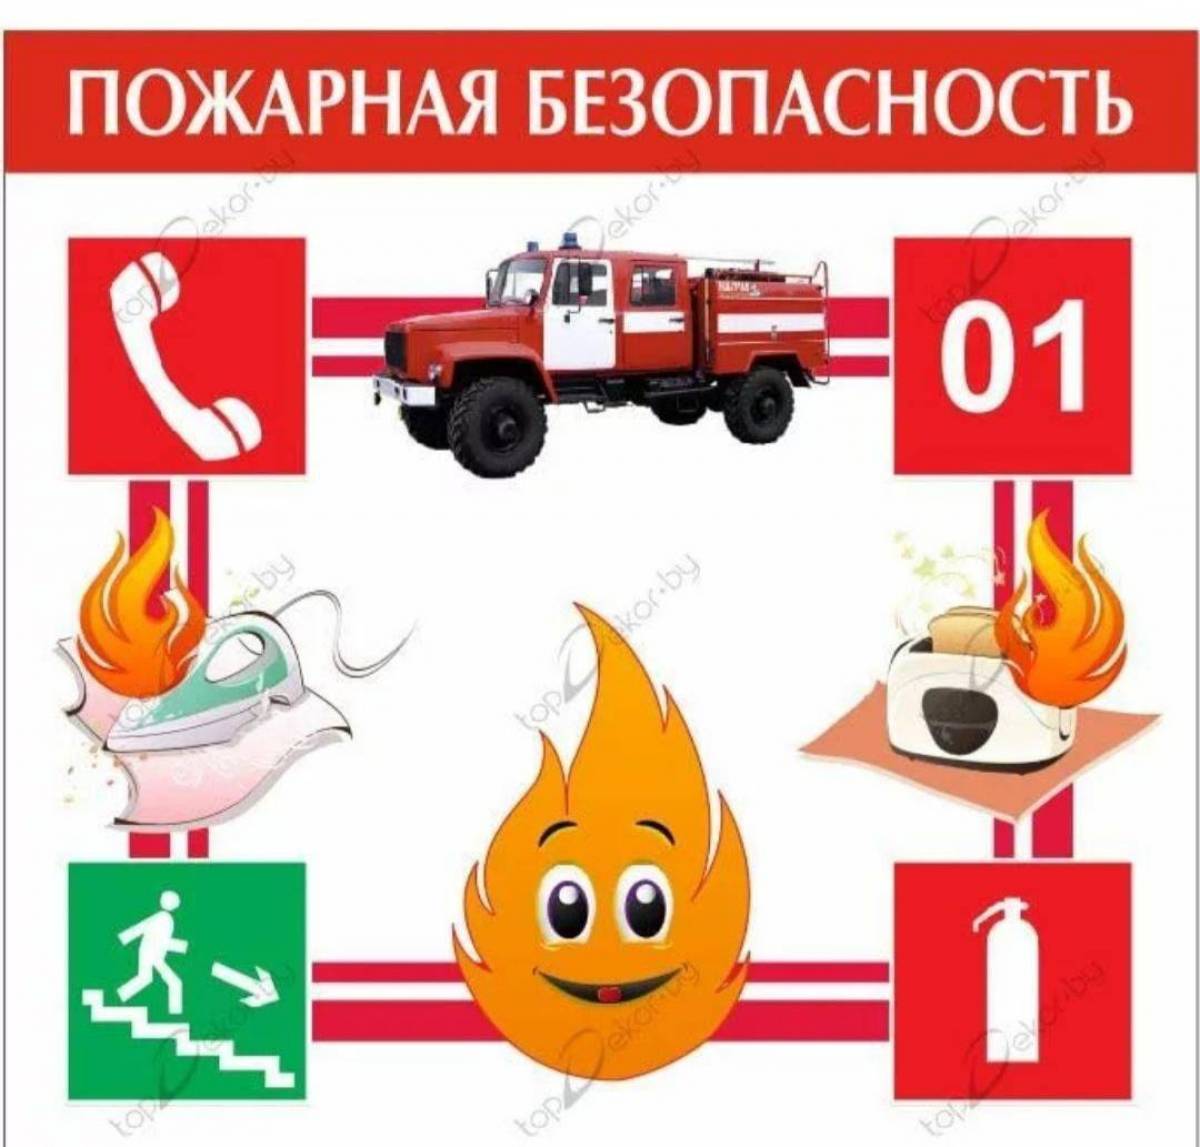 Пожарная безопасность для детей #19